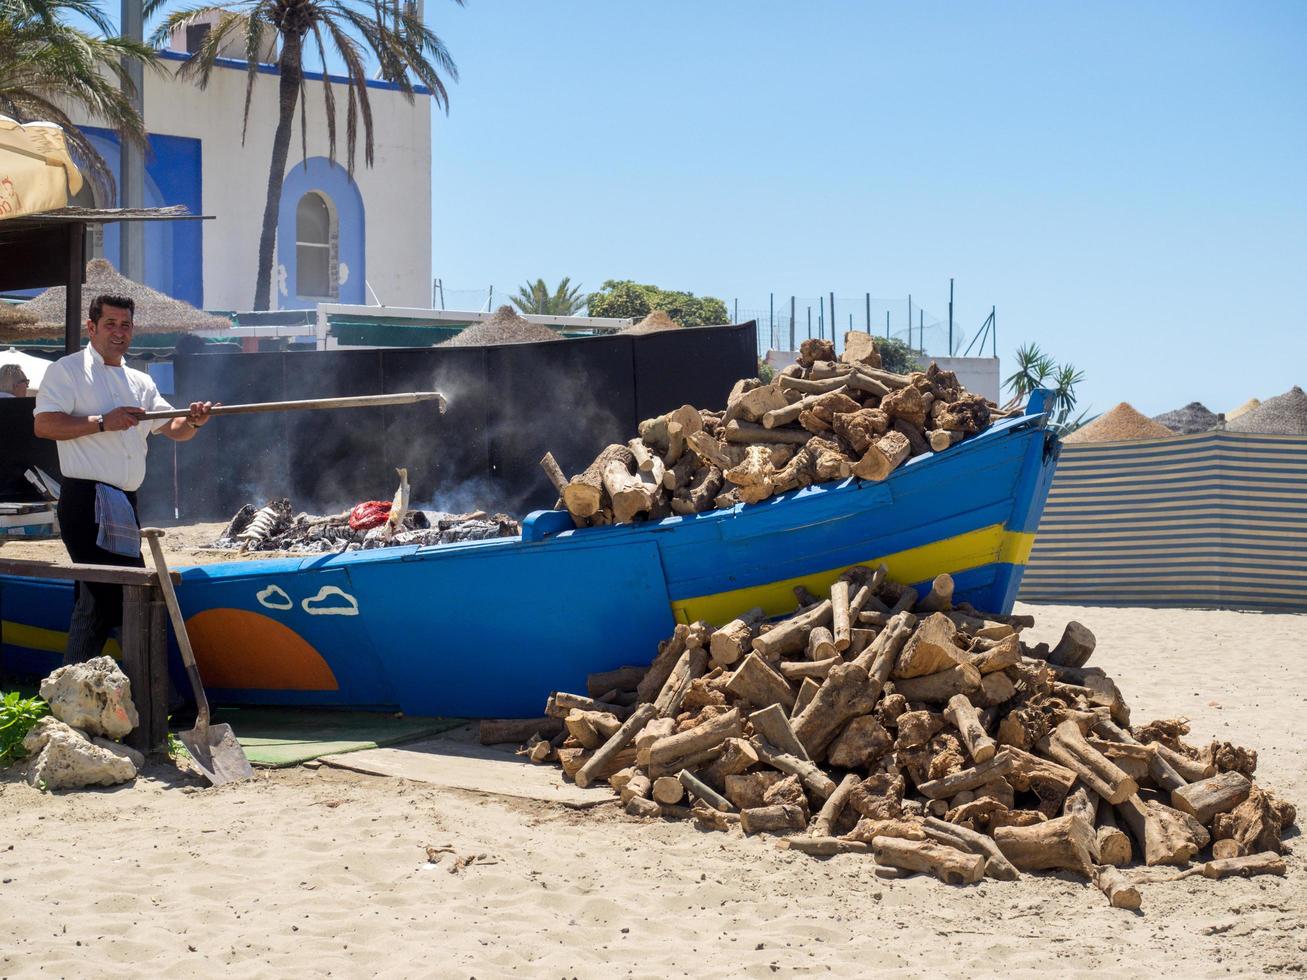 marbella, andalusien, spanien, 2014. mann, der fisch am strand kocht foto